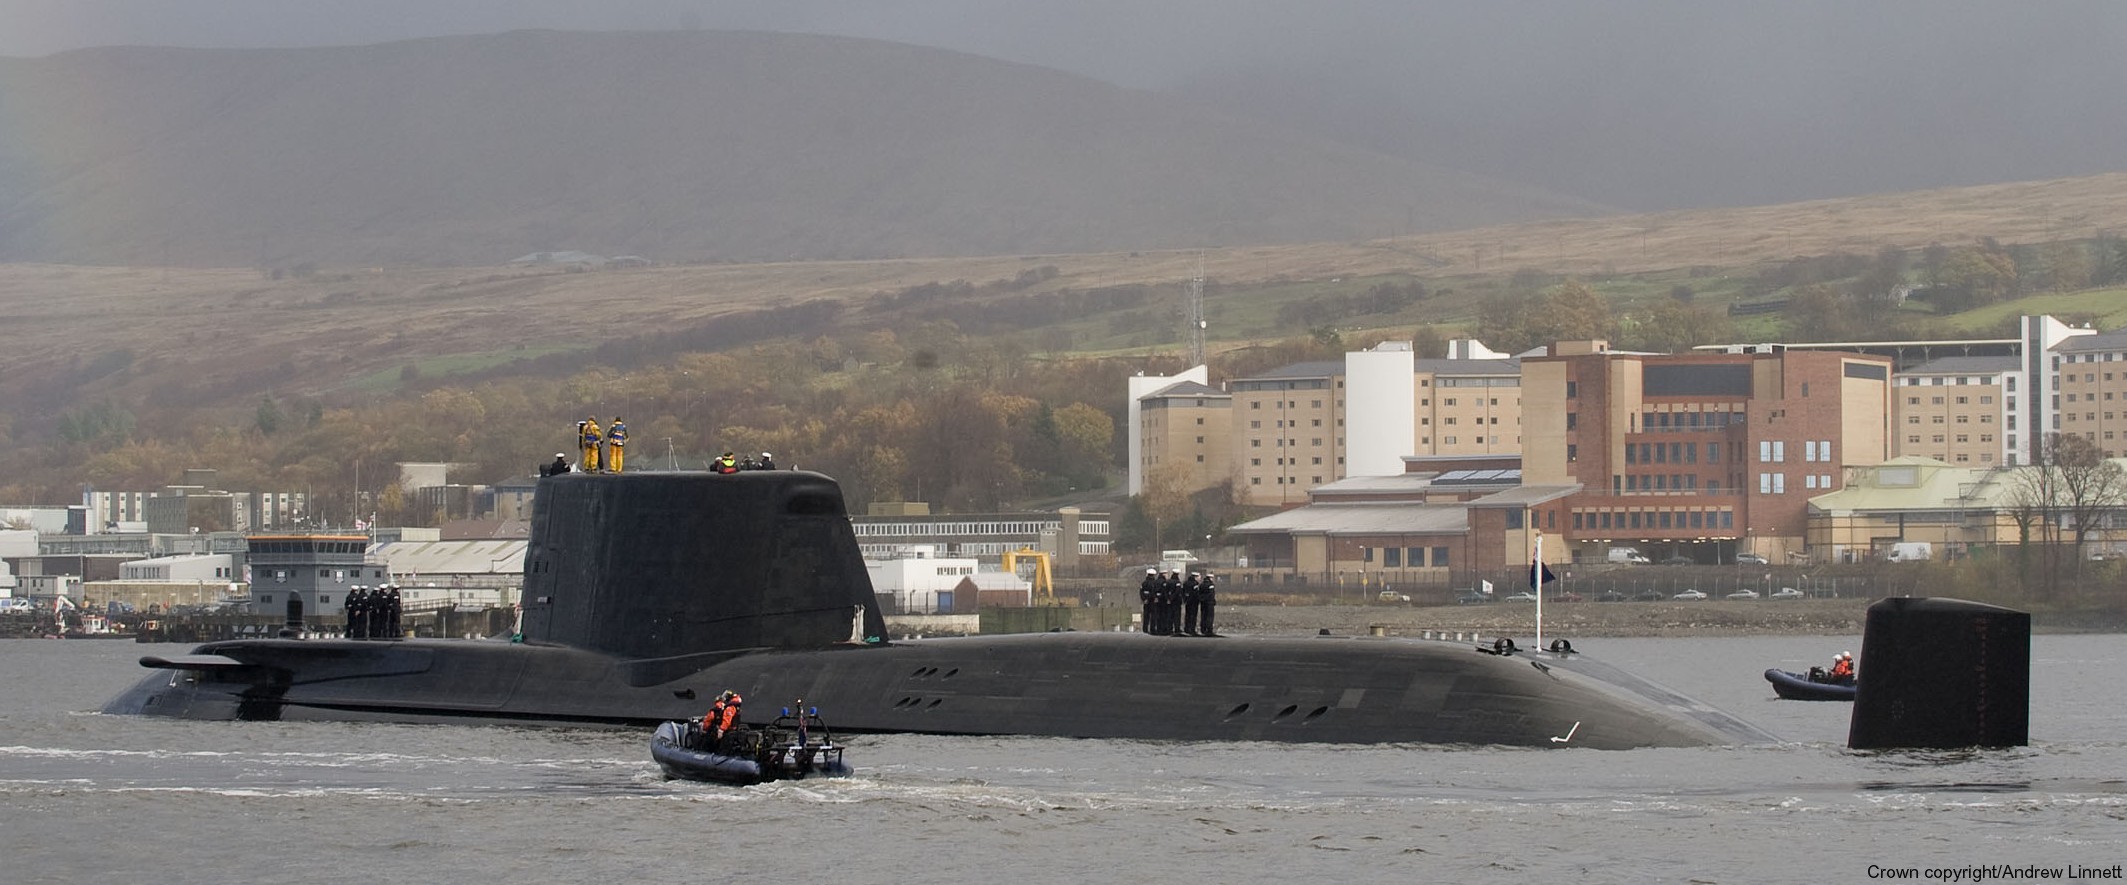 s119 hms astute s-119 attack submarine ssn hunter killer royal navy 29